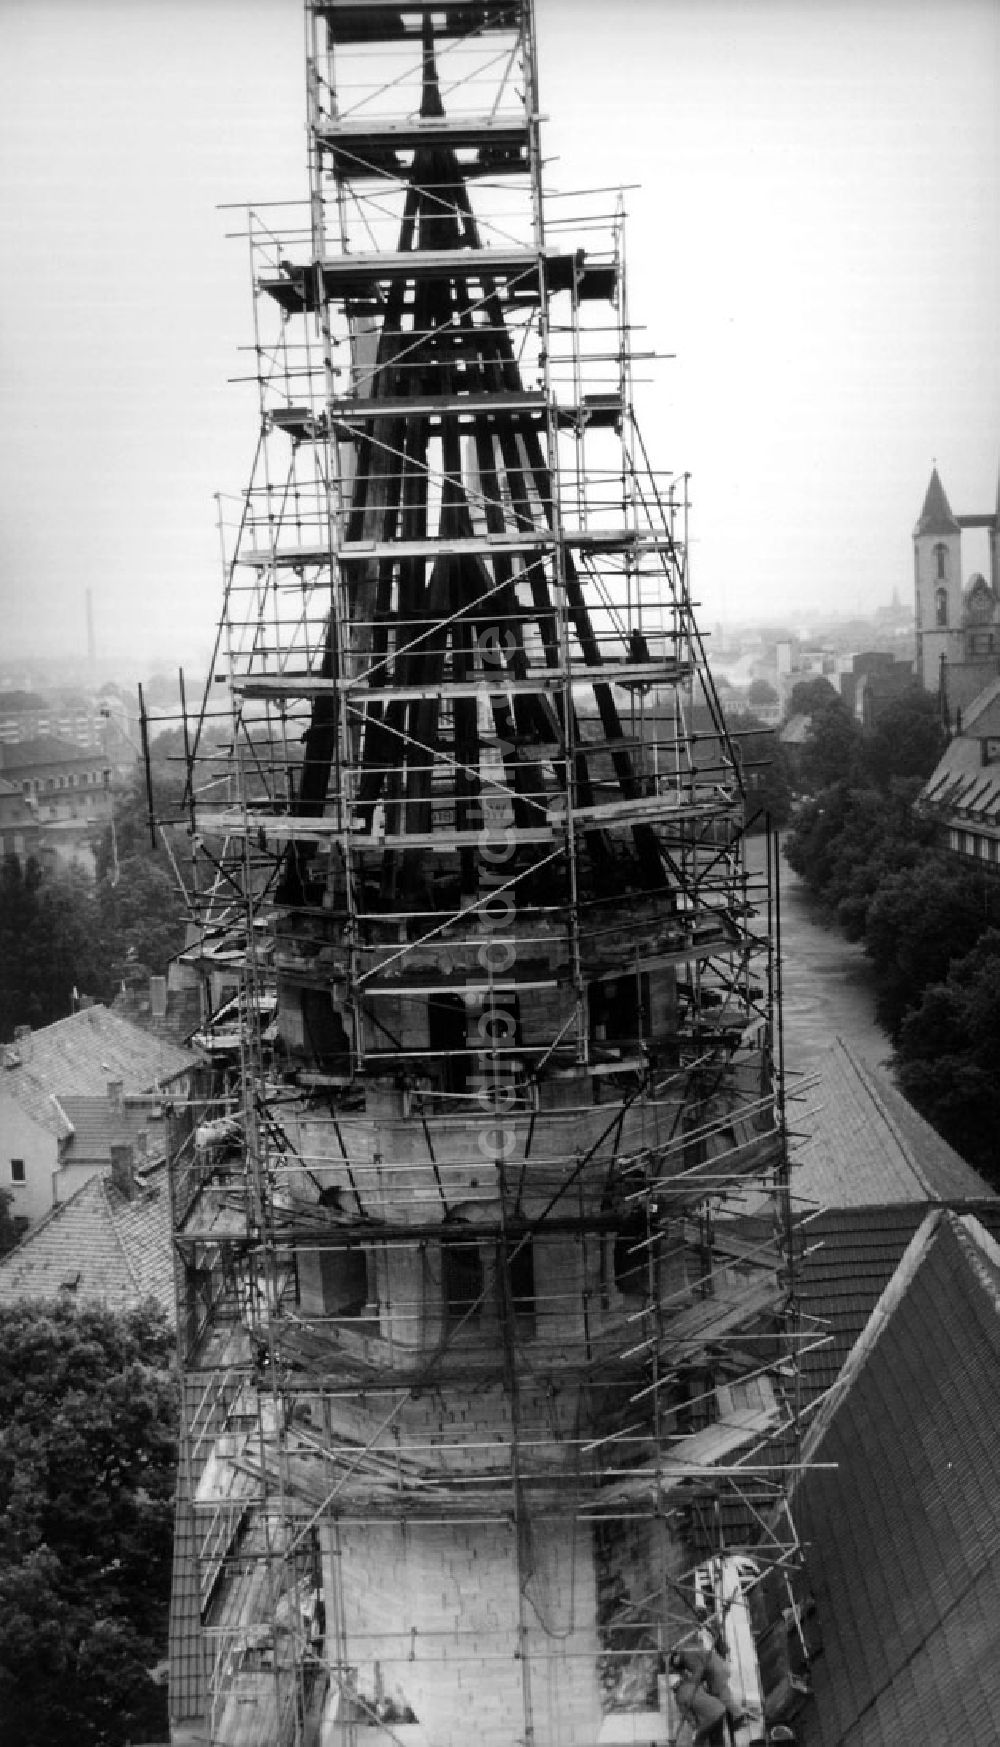 Halberstadt: Rekonstruktionsarbeiten am der Liebfrauenkirche zu Halberstadt